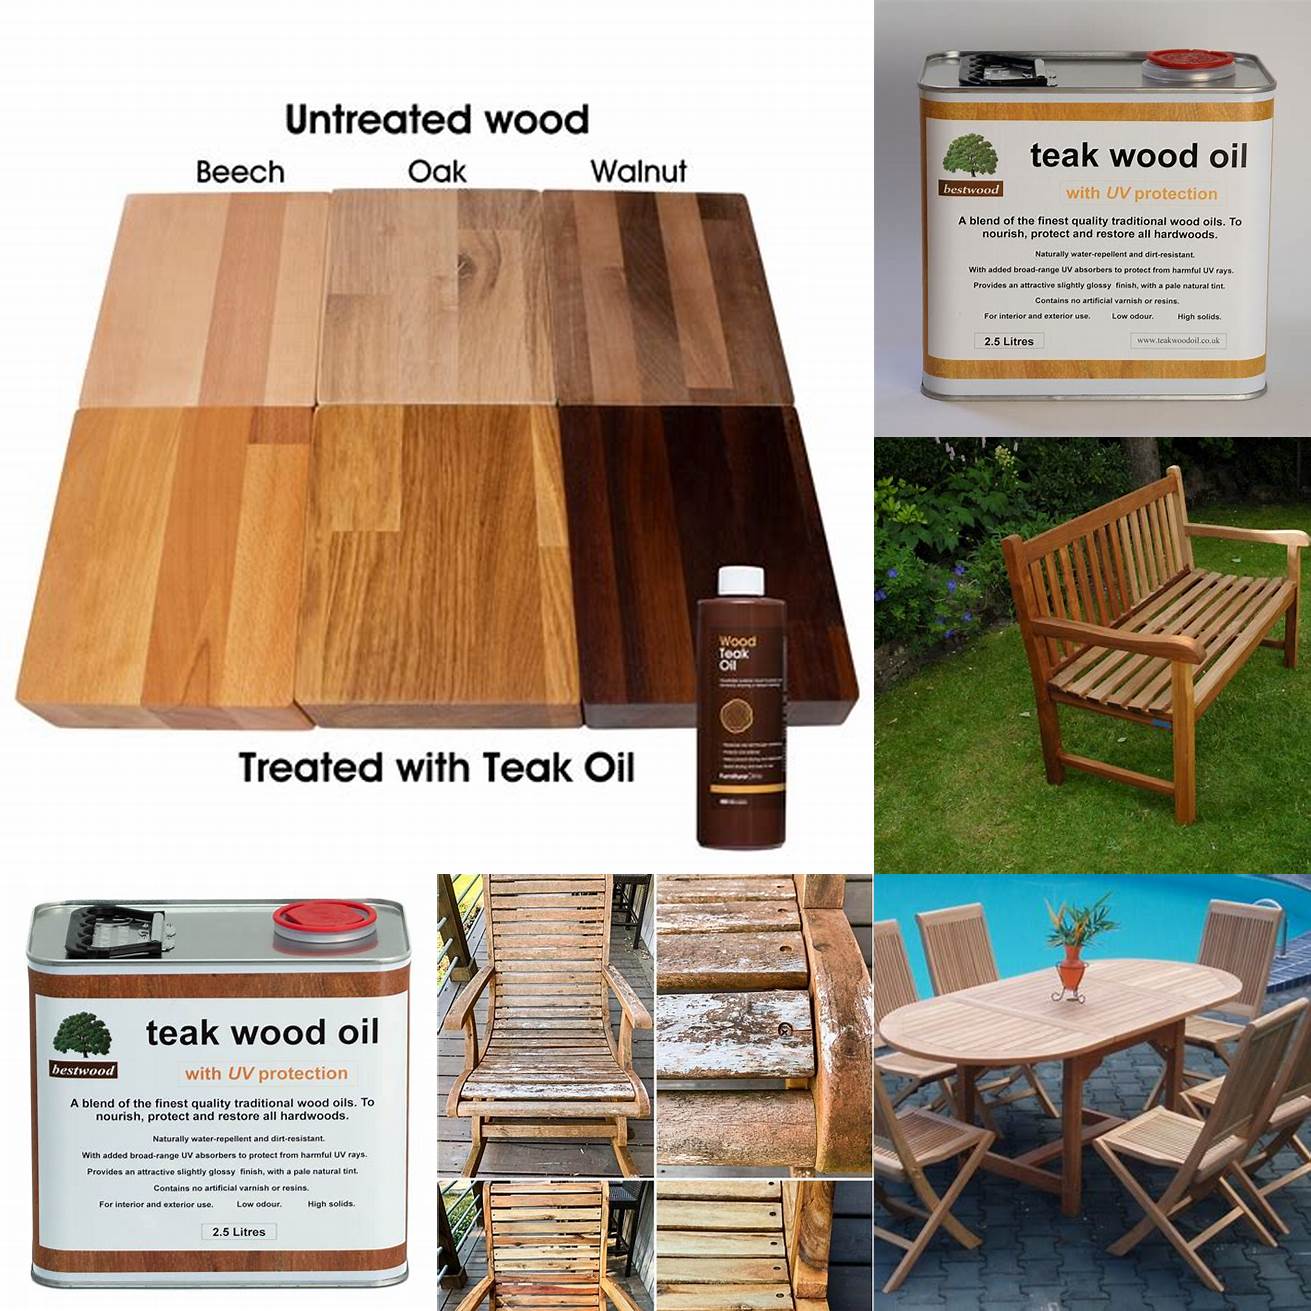 Teak wood oil